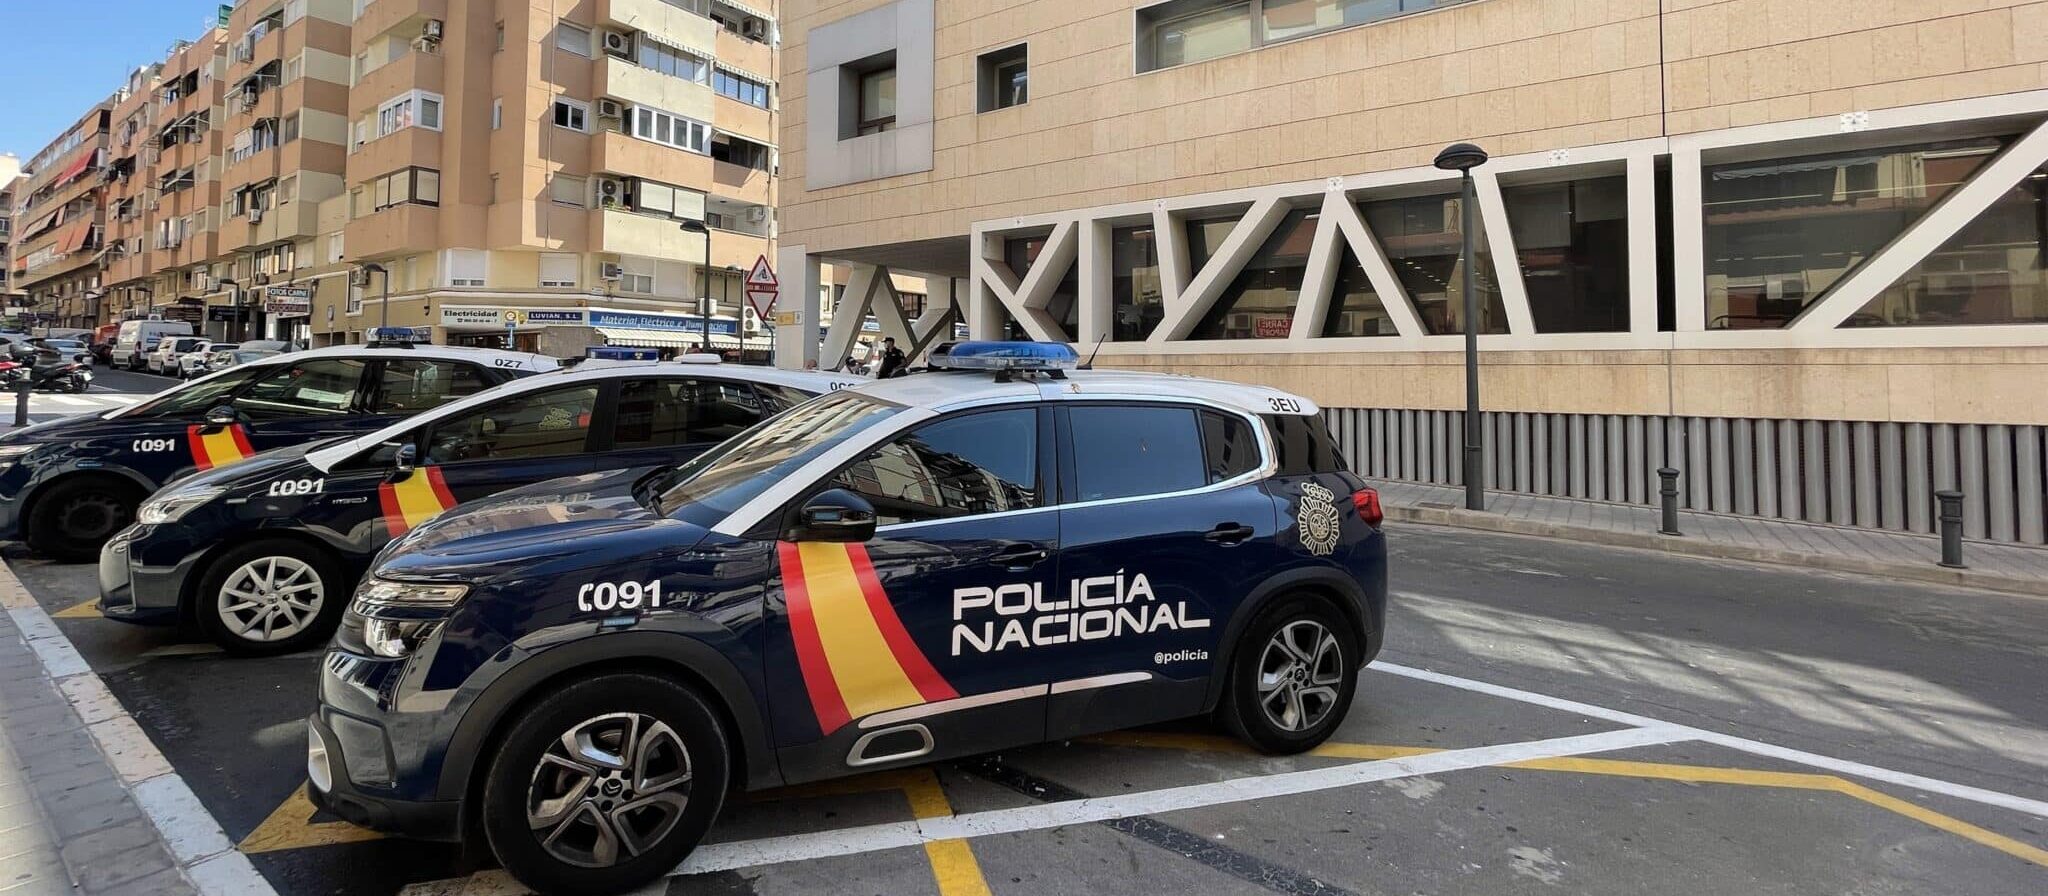 Policía Nacional de Alicante, en foto de archivo